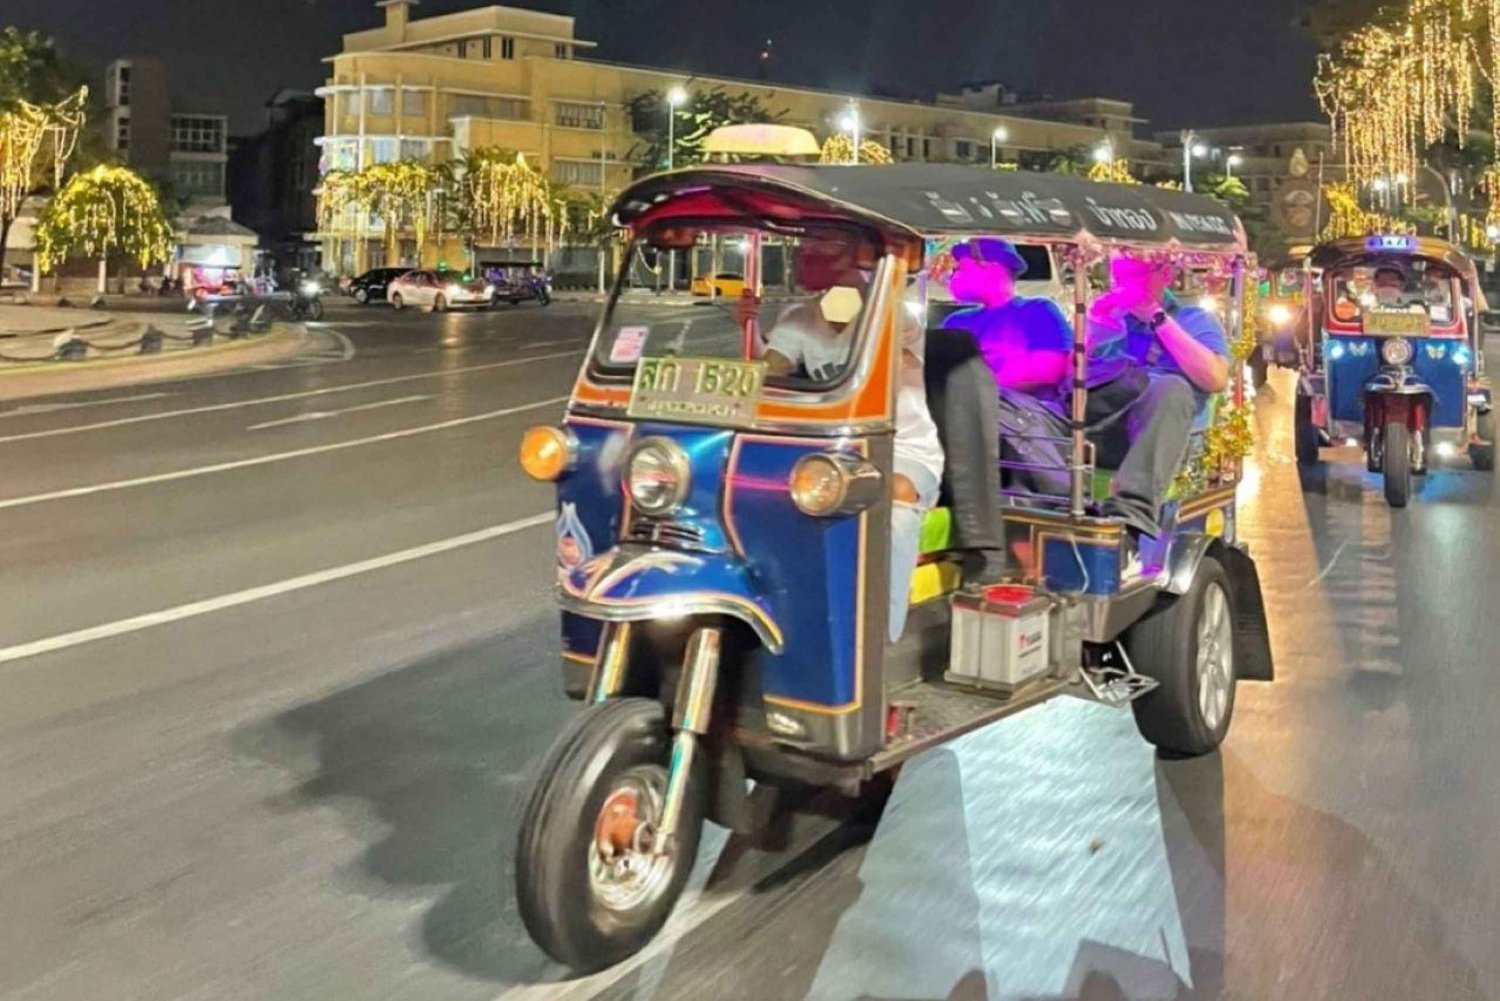 Bangkok: TUK TUK Tour Nachtleven Privé met ophaalservice vanaf je hotel